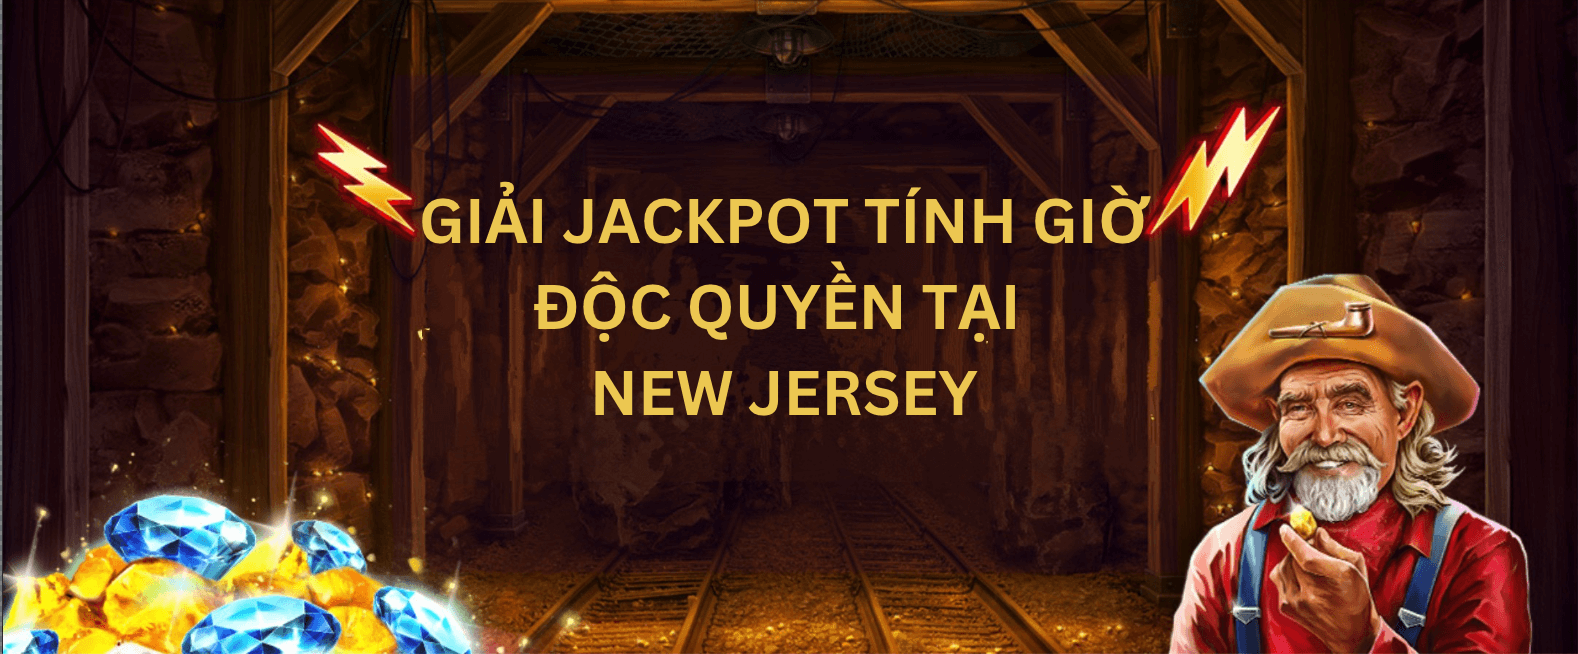 Red Tiger phát trực tiếp giải Jackpot tính giờ tại New Jersey